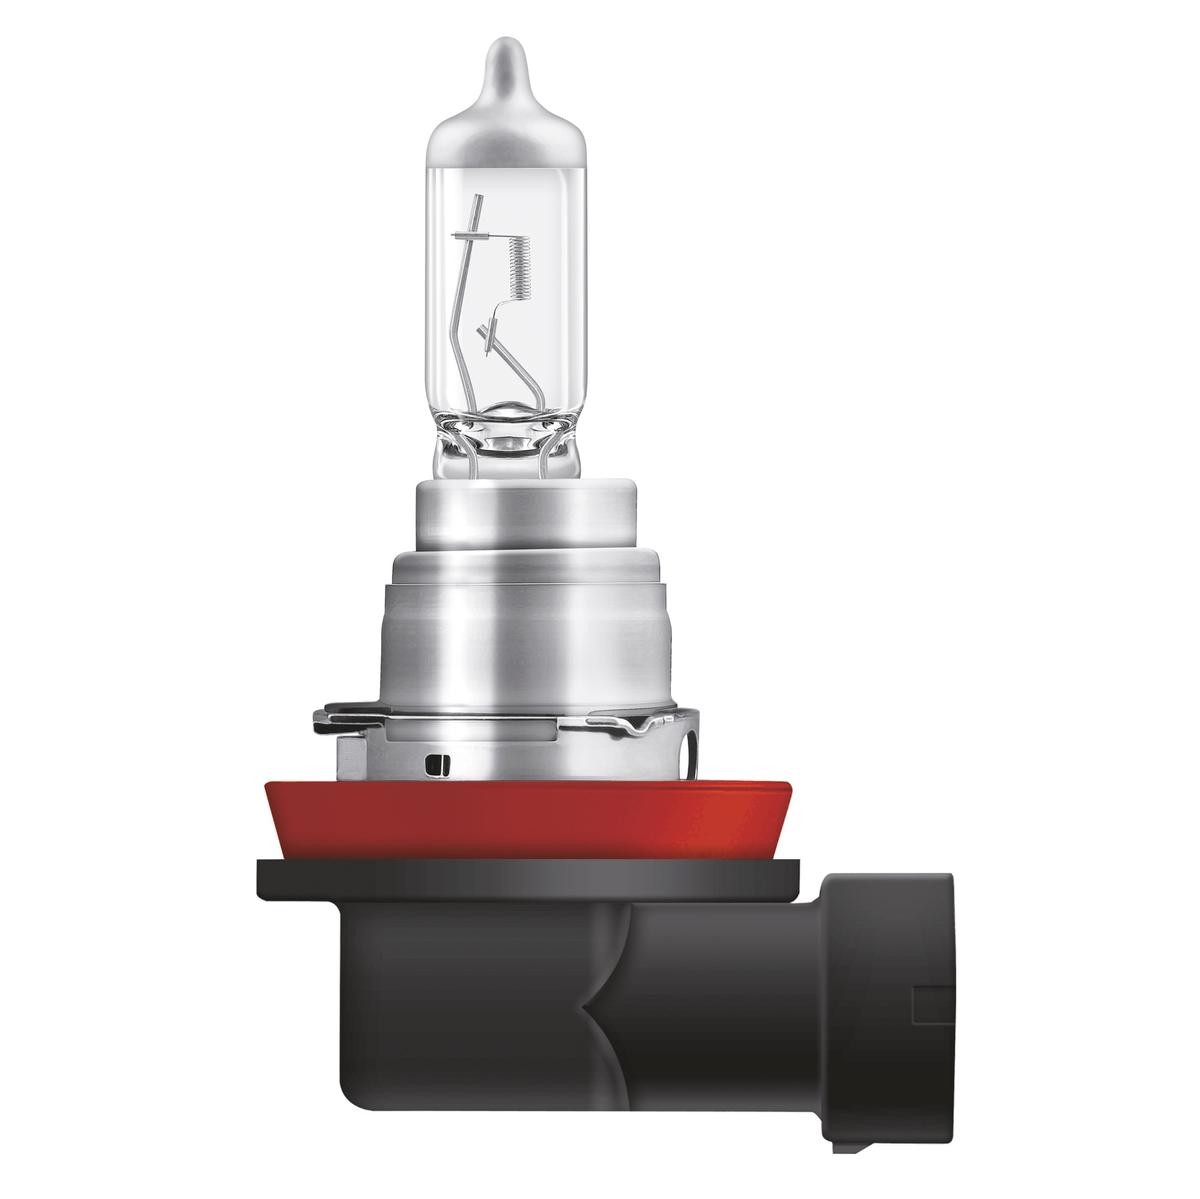 2x H8 12V 35W HALOGENLAMPE GLÜHLAMPE GLÜHBIRNE LAMPE BIRNE Original  LIMASTAR XENON EFFEKT SUPER WHITE 1A